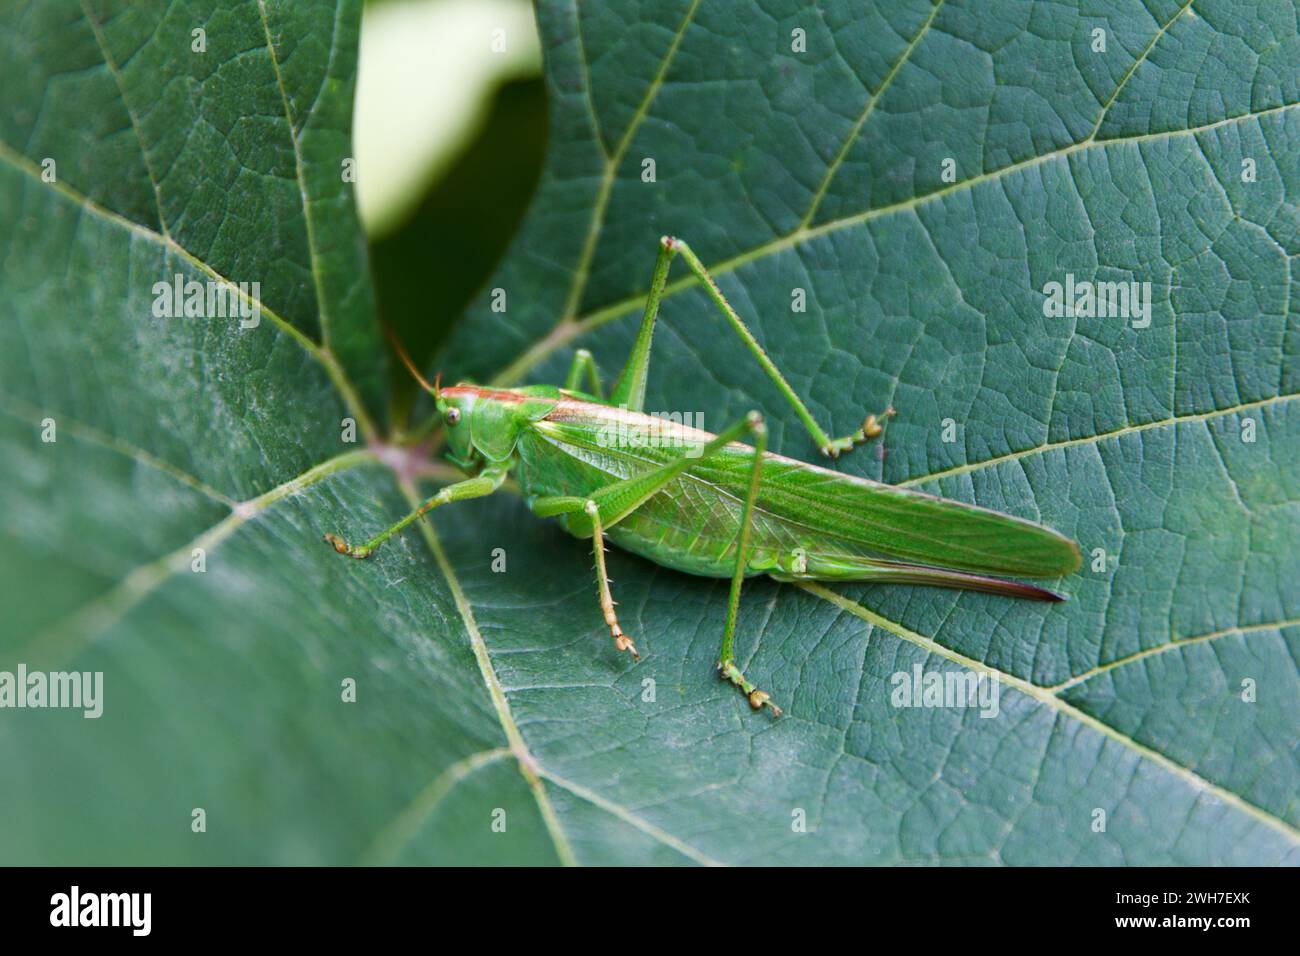 Grande cricket verde, Tettigonia viridissima, femmina adulta o imago su grande foglia verde in estate, primo piano. Concentrati sul cricket Foto Stock